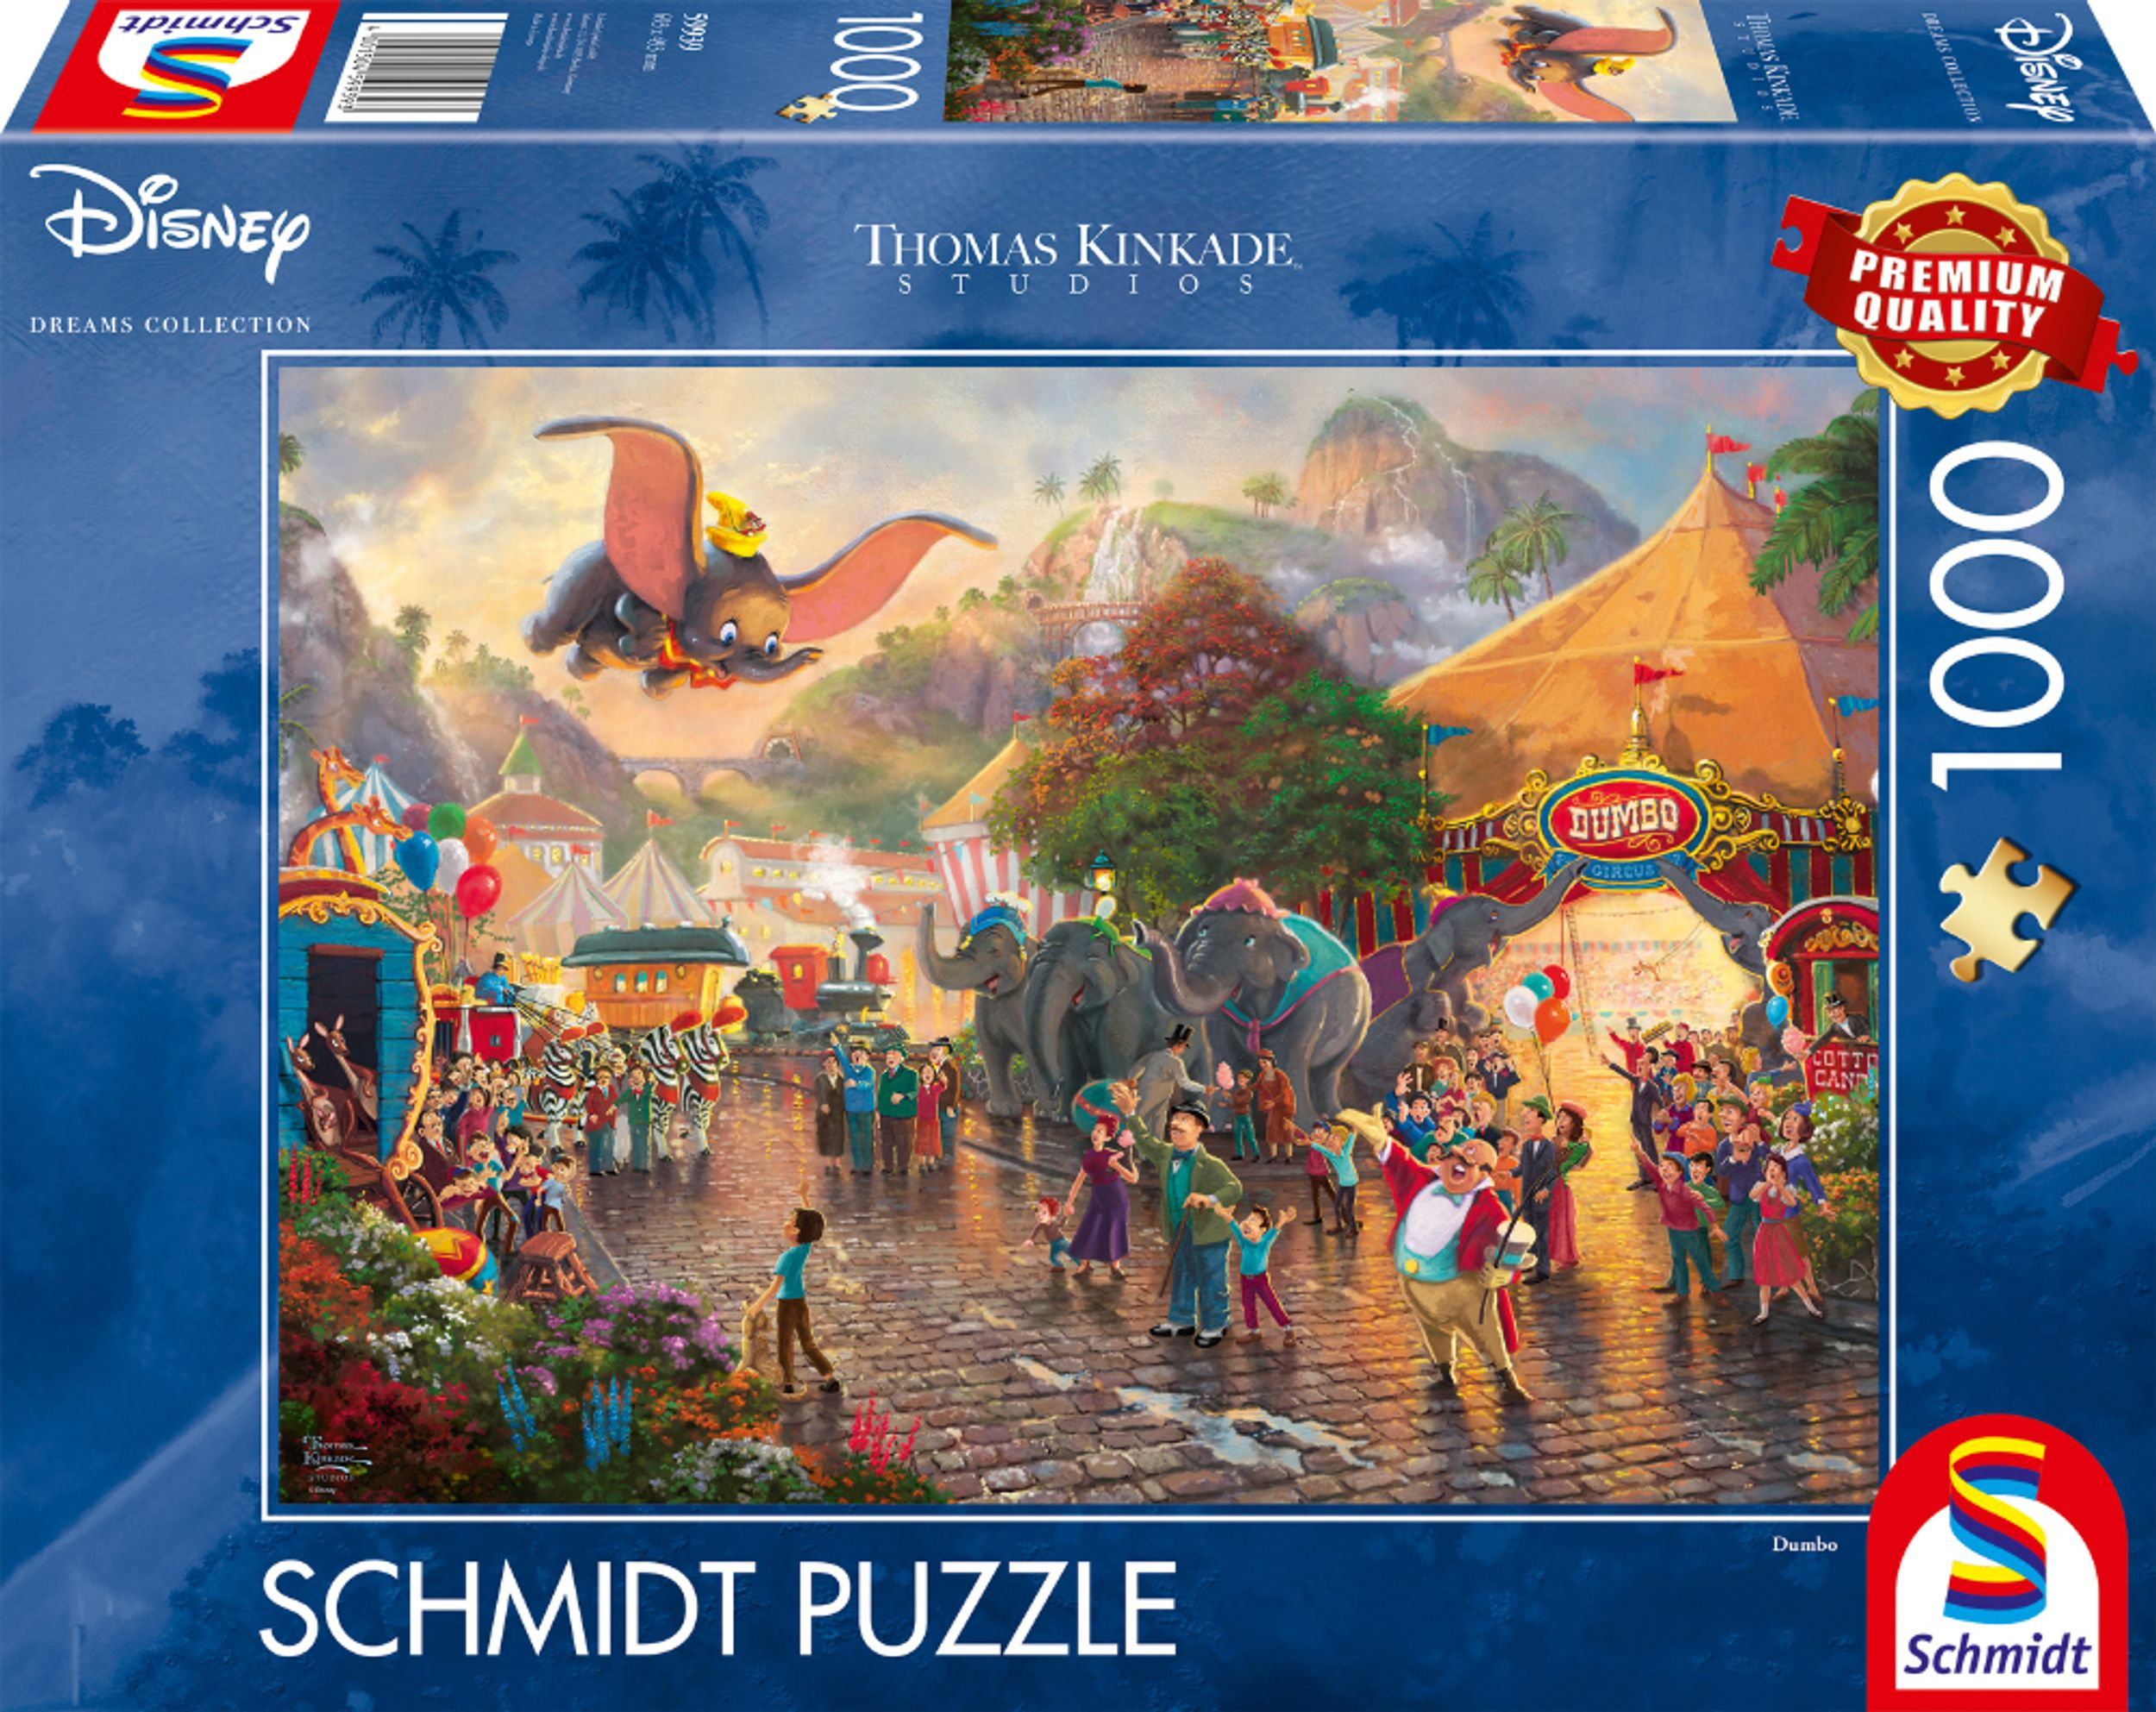 SCHMIDT Puzzle Dumbo SPIELE